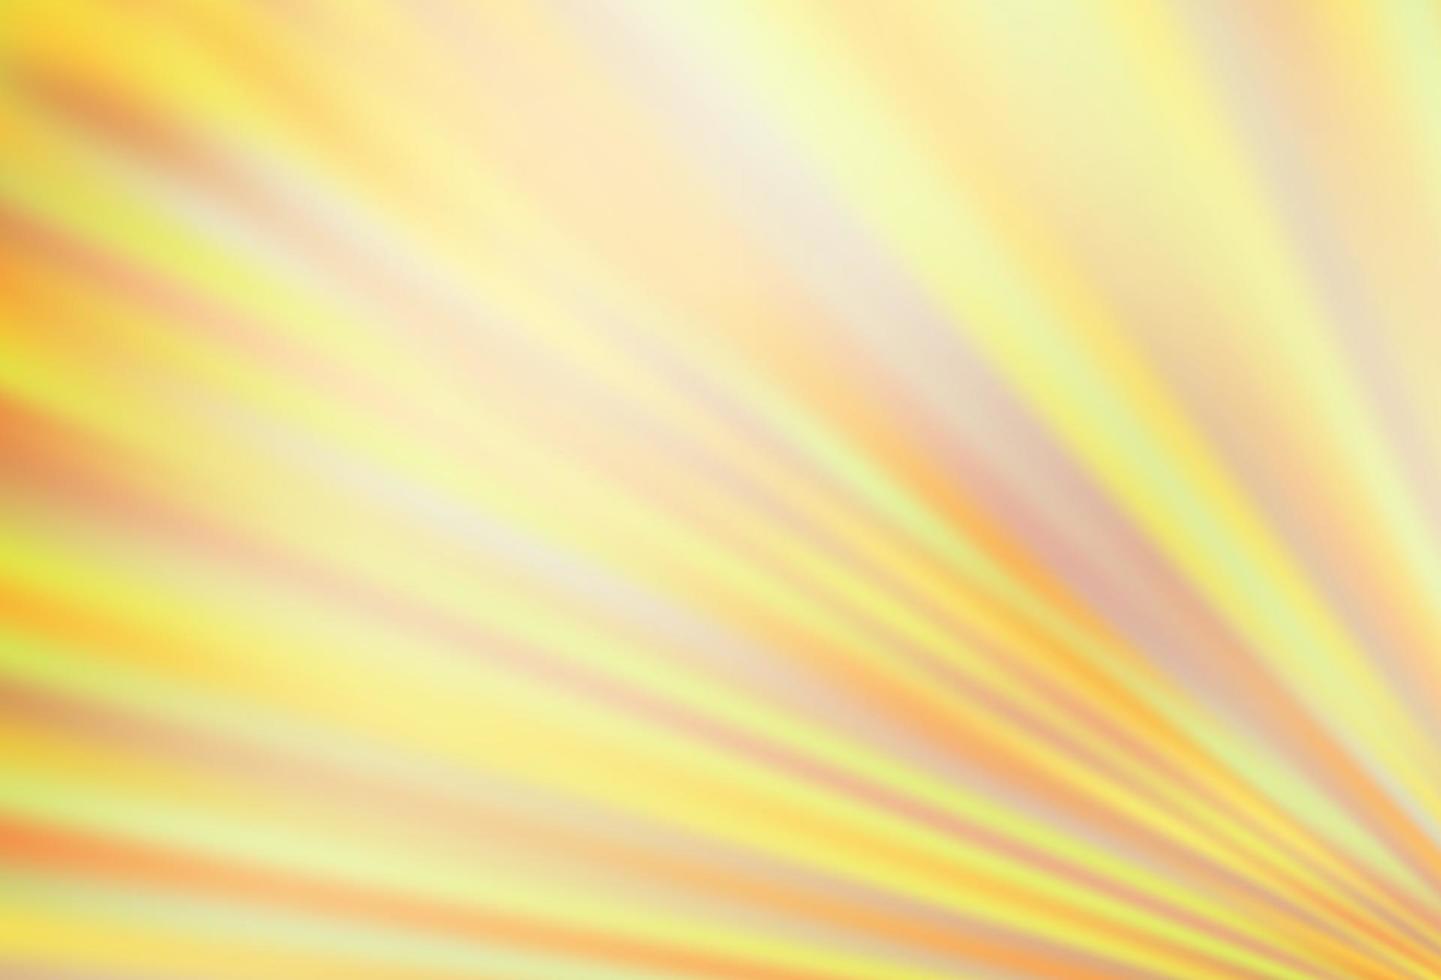 sfondo vettoriale giallo chiaro, arancione con lunghe linee.